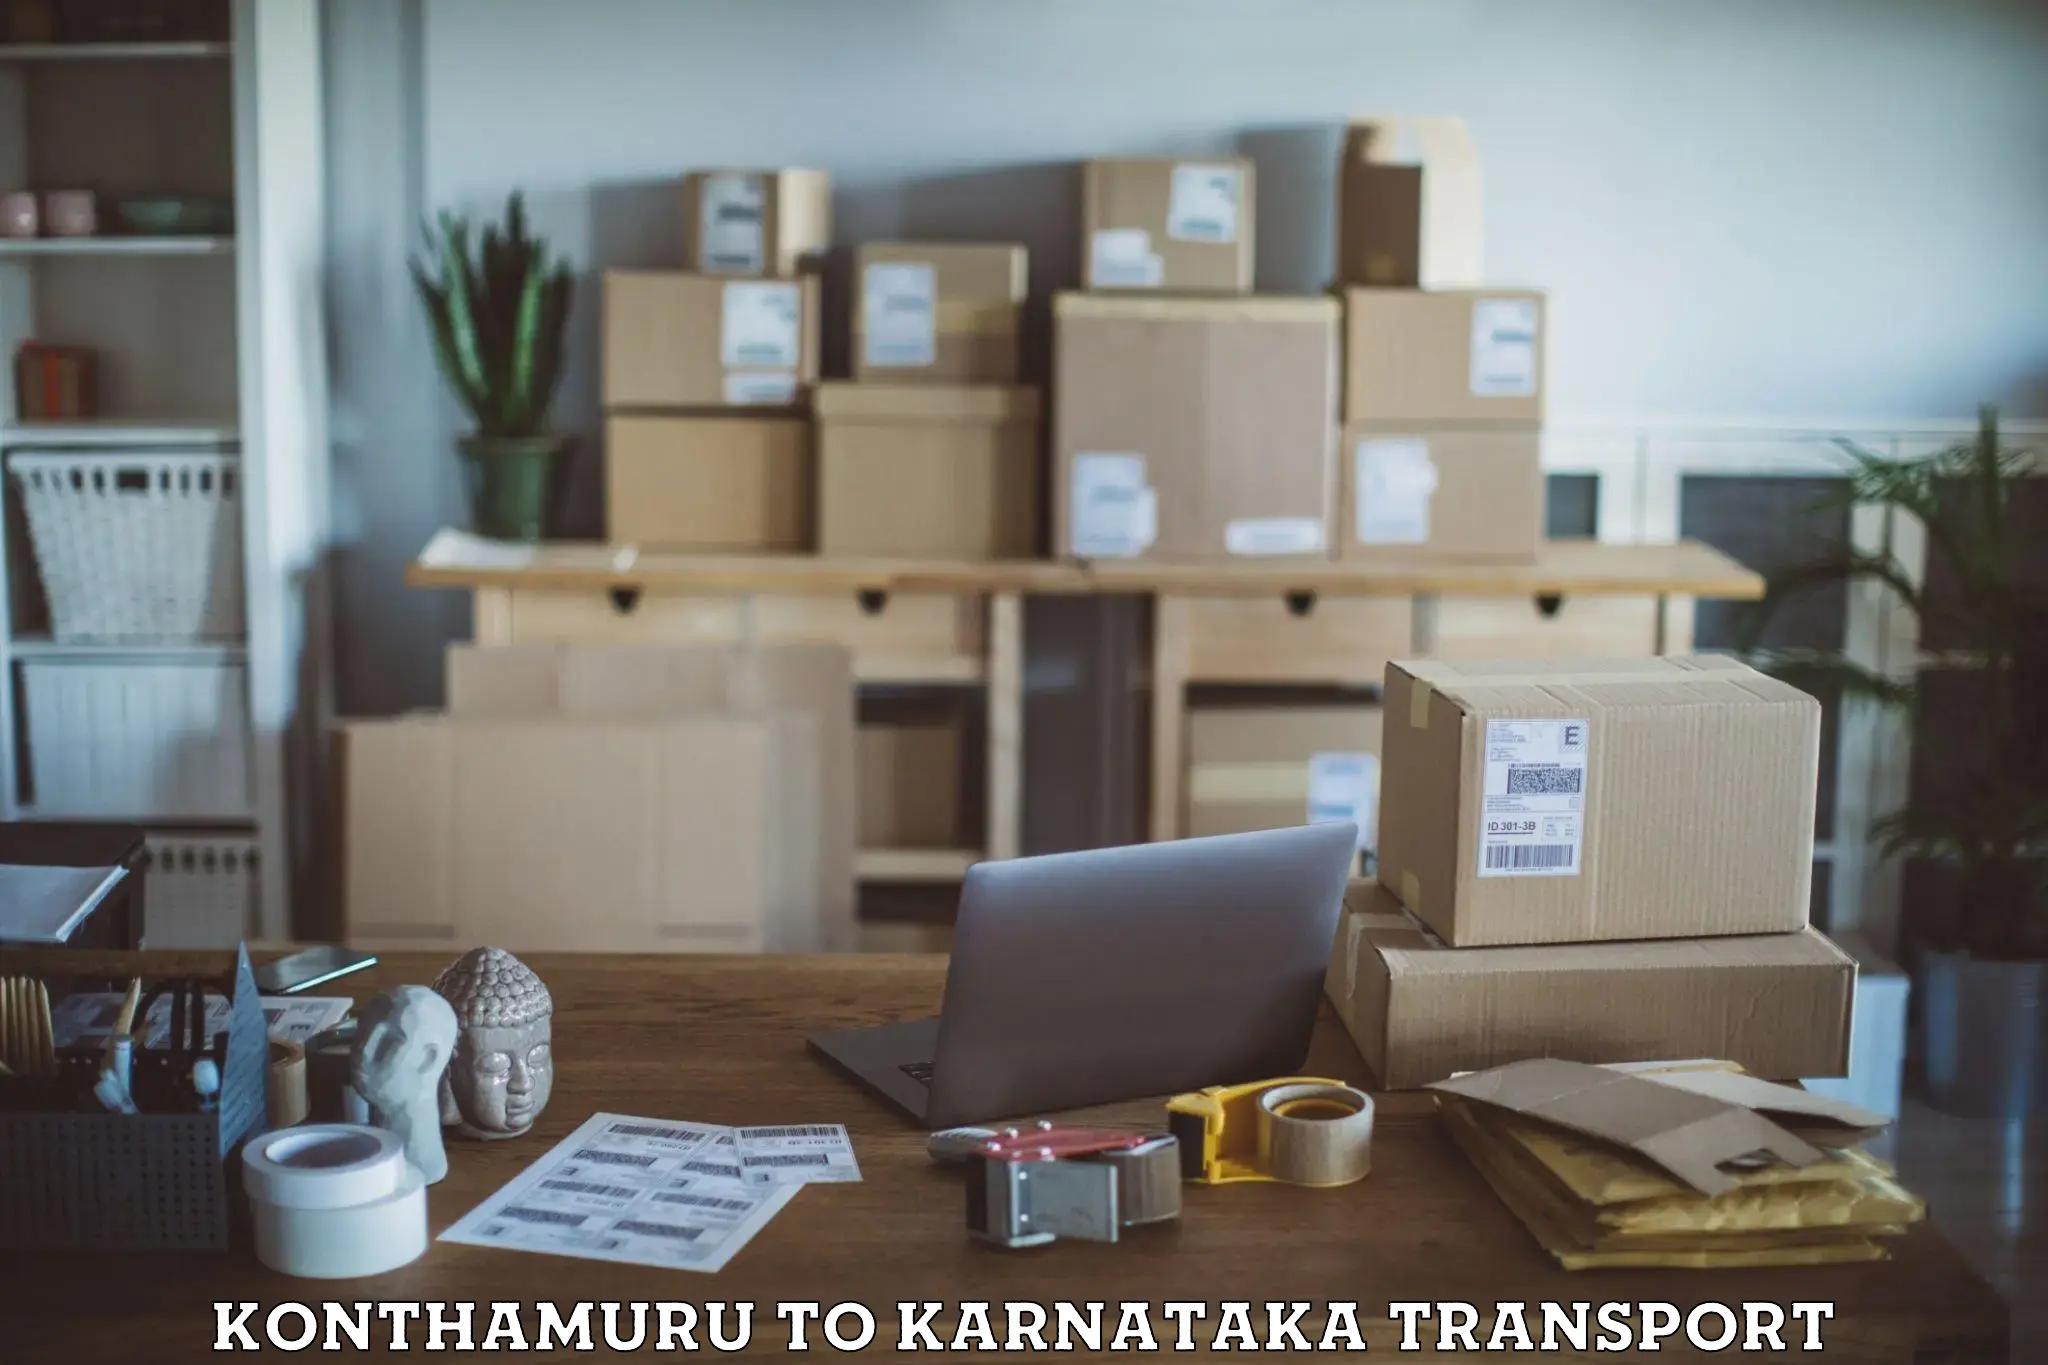 Transport in sharing Konthamuru to Honnali